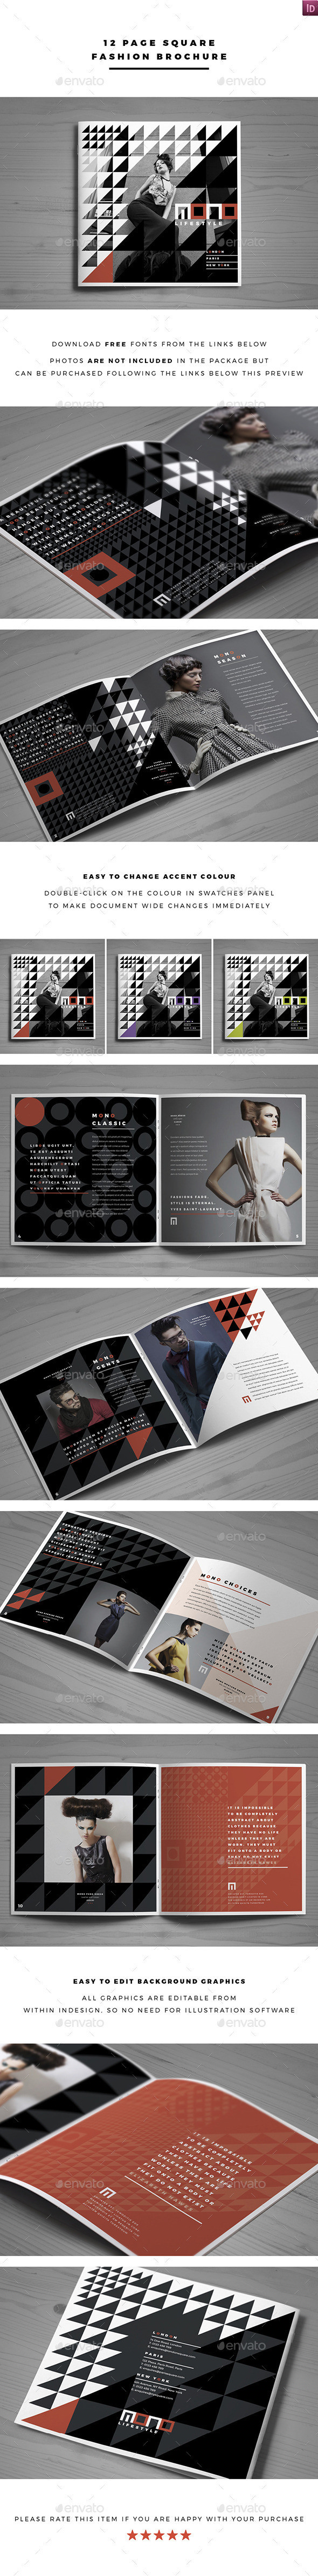 Preview square fashion brochure